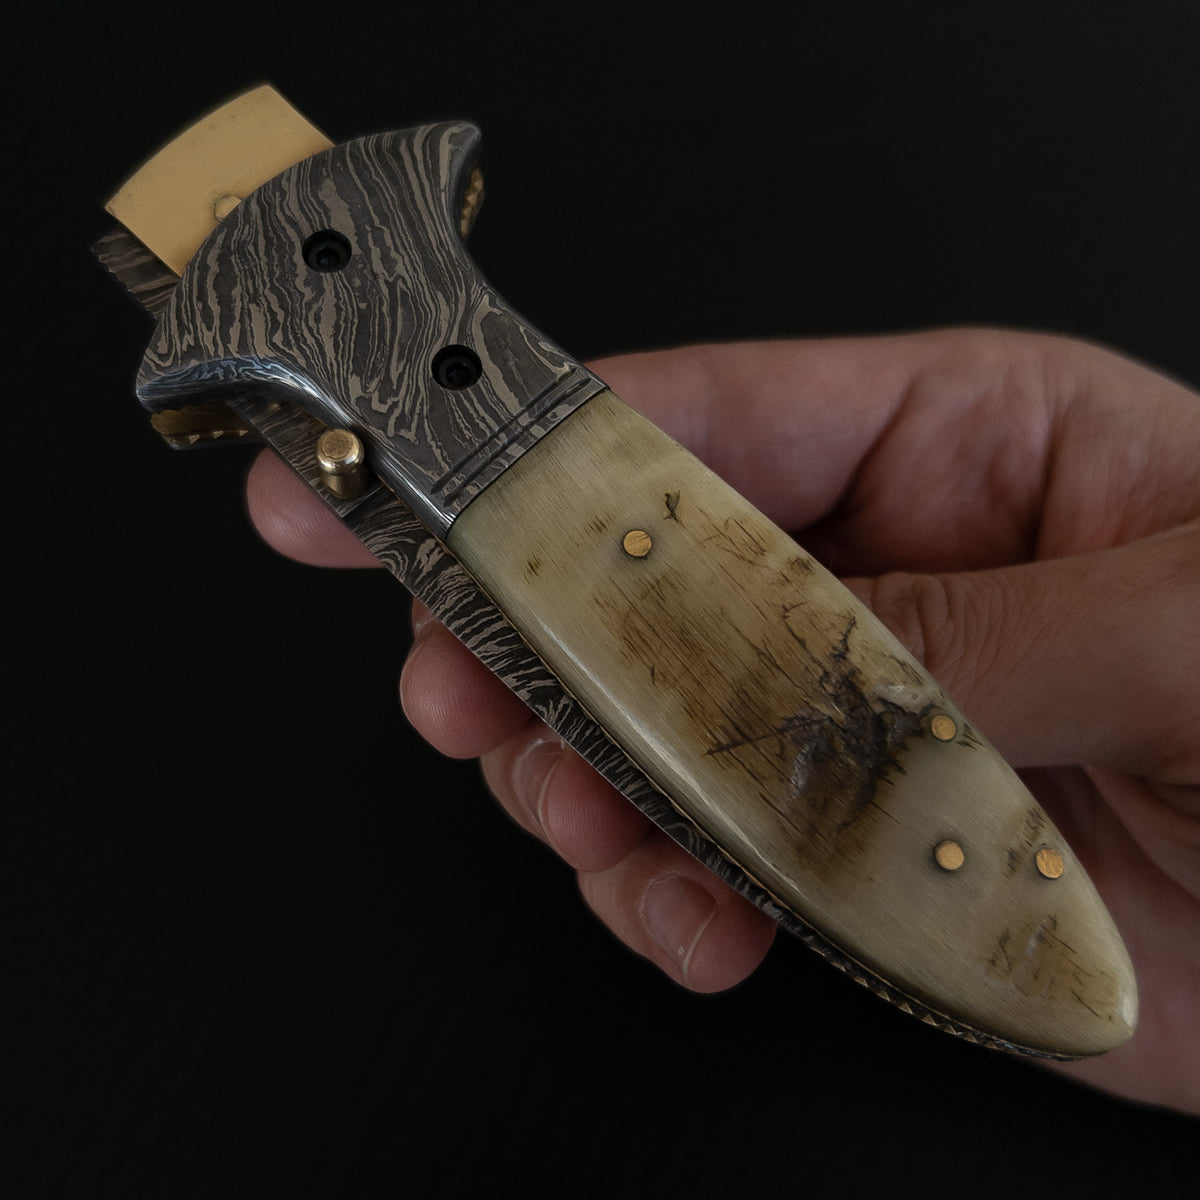 Canivete artesanal com lâmina de aço damasco e cabo com chifre.